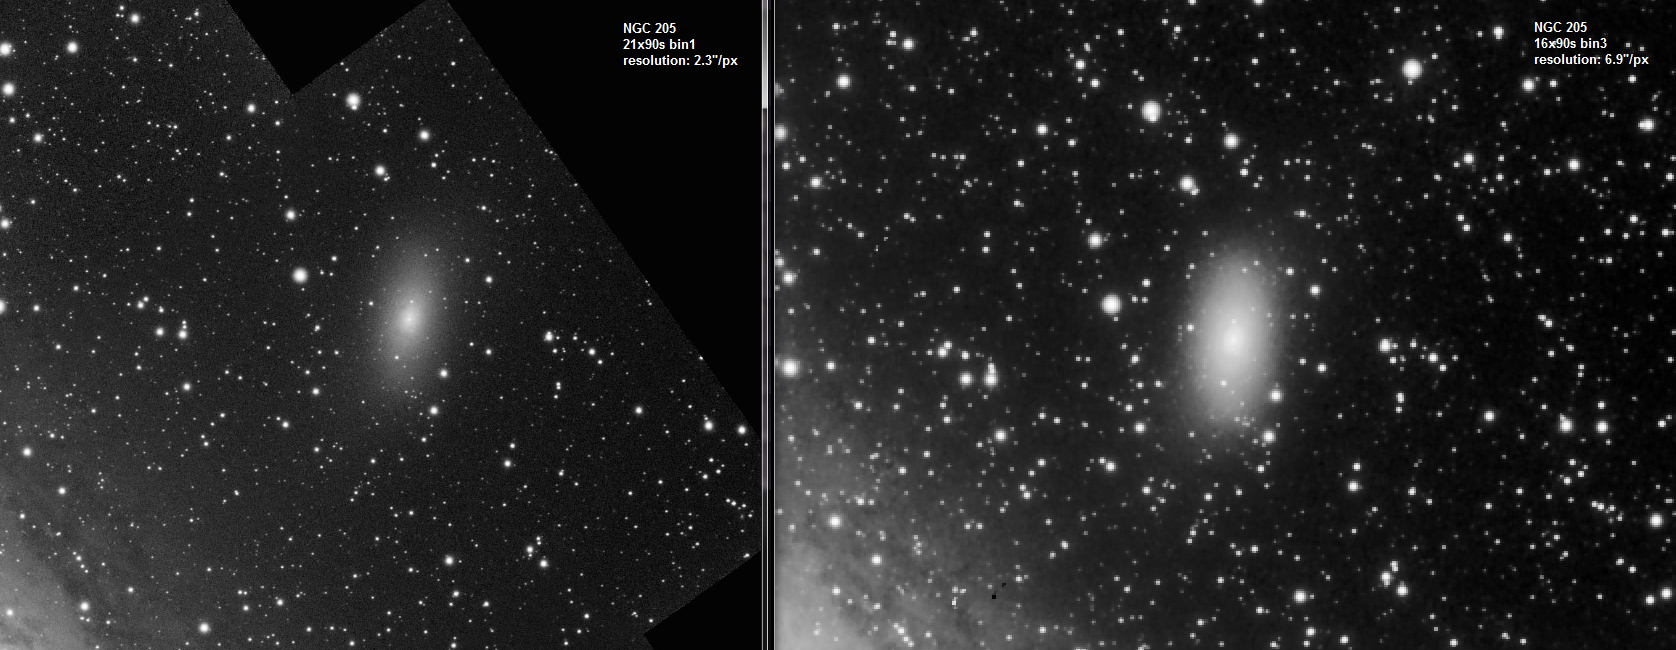 NGC 205 Comparison.png